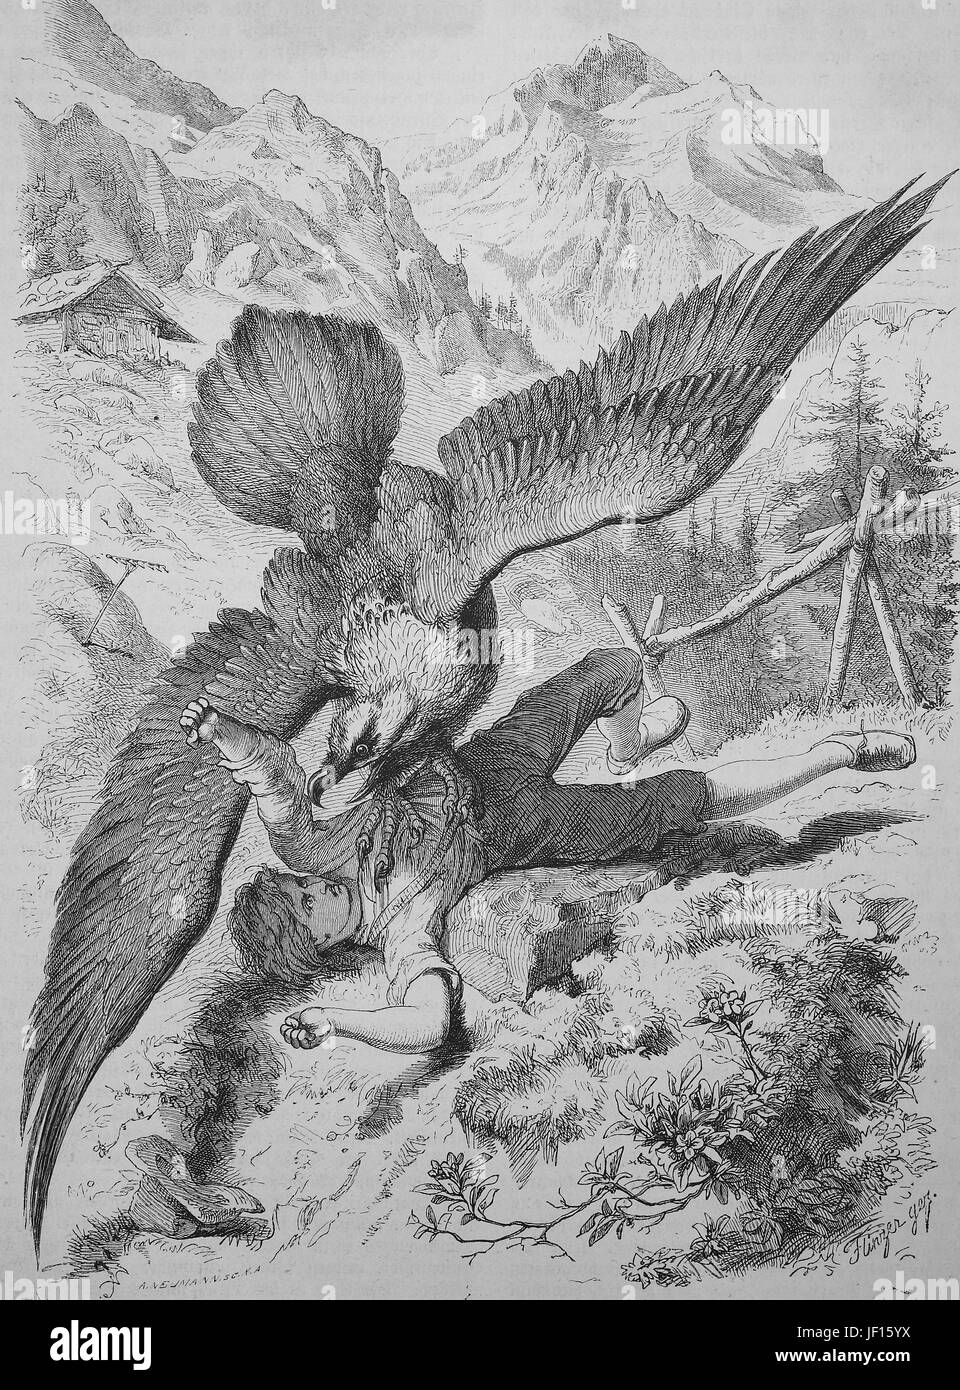 Un avvoltoio attacca un ragazzo, storico illustrazione della vita animale nel mondo alpino, Digitale riproduzione migliorata da un originale stampa dal 1888 Foto Stock